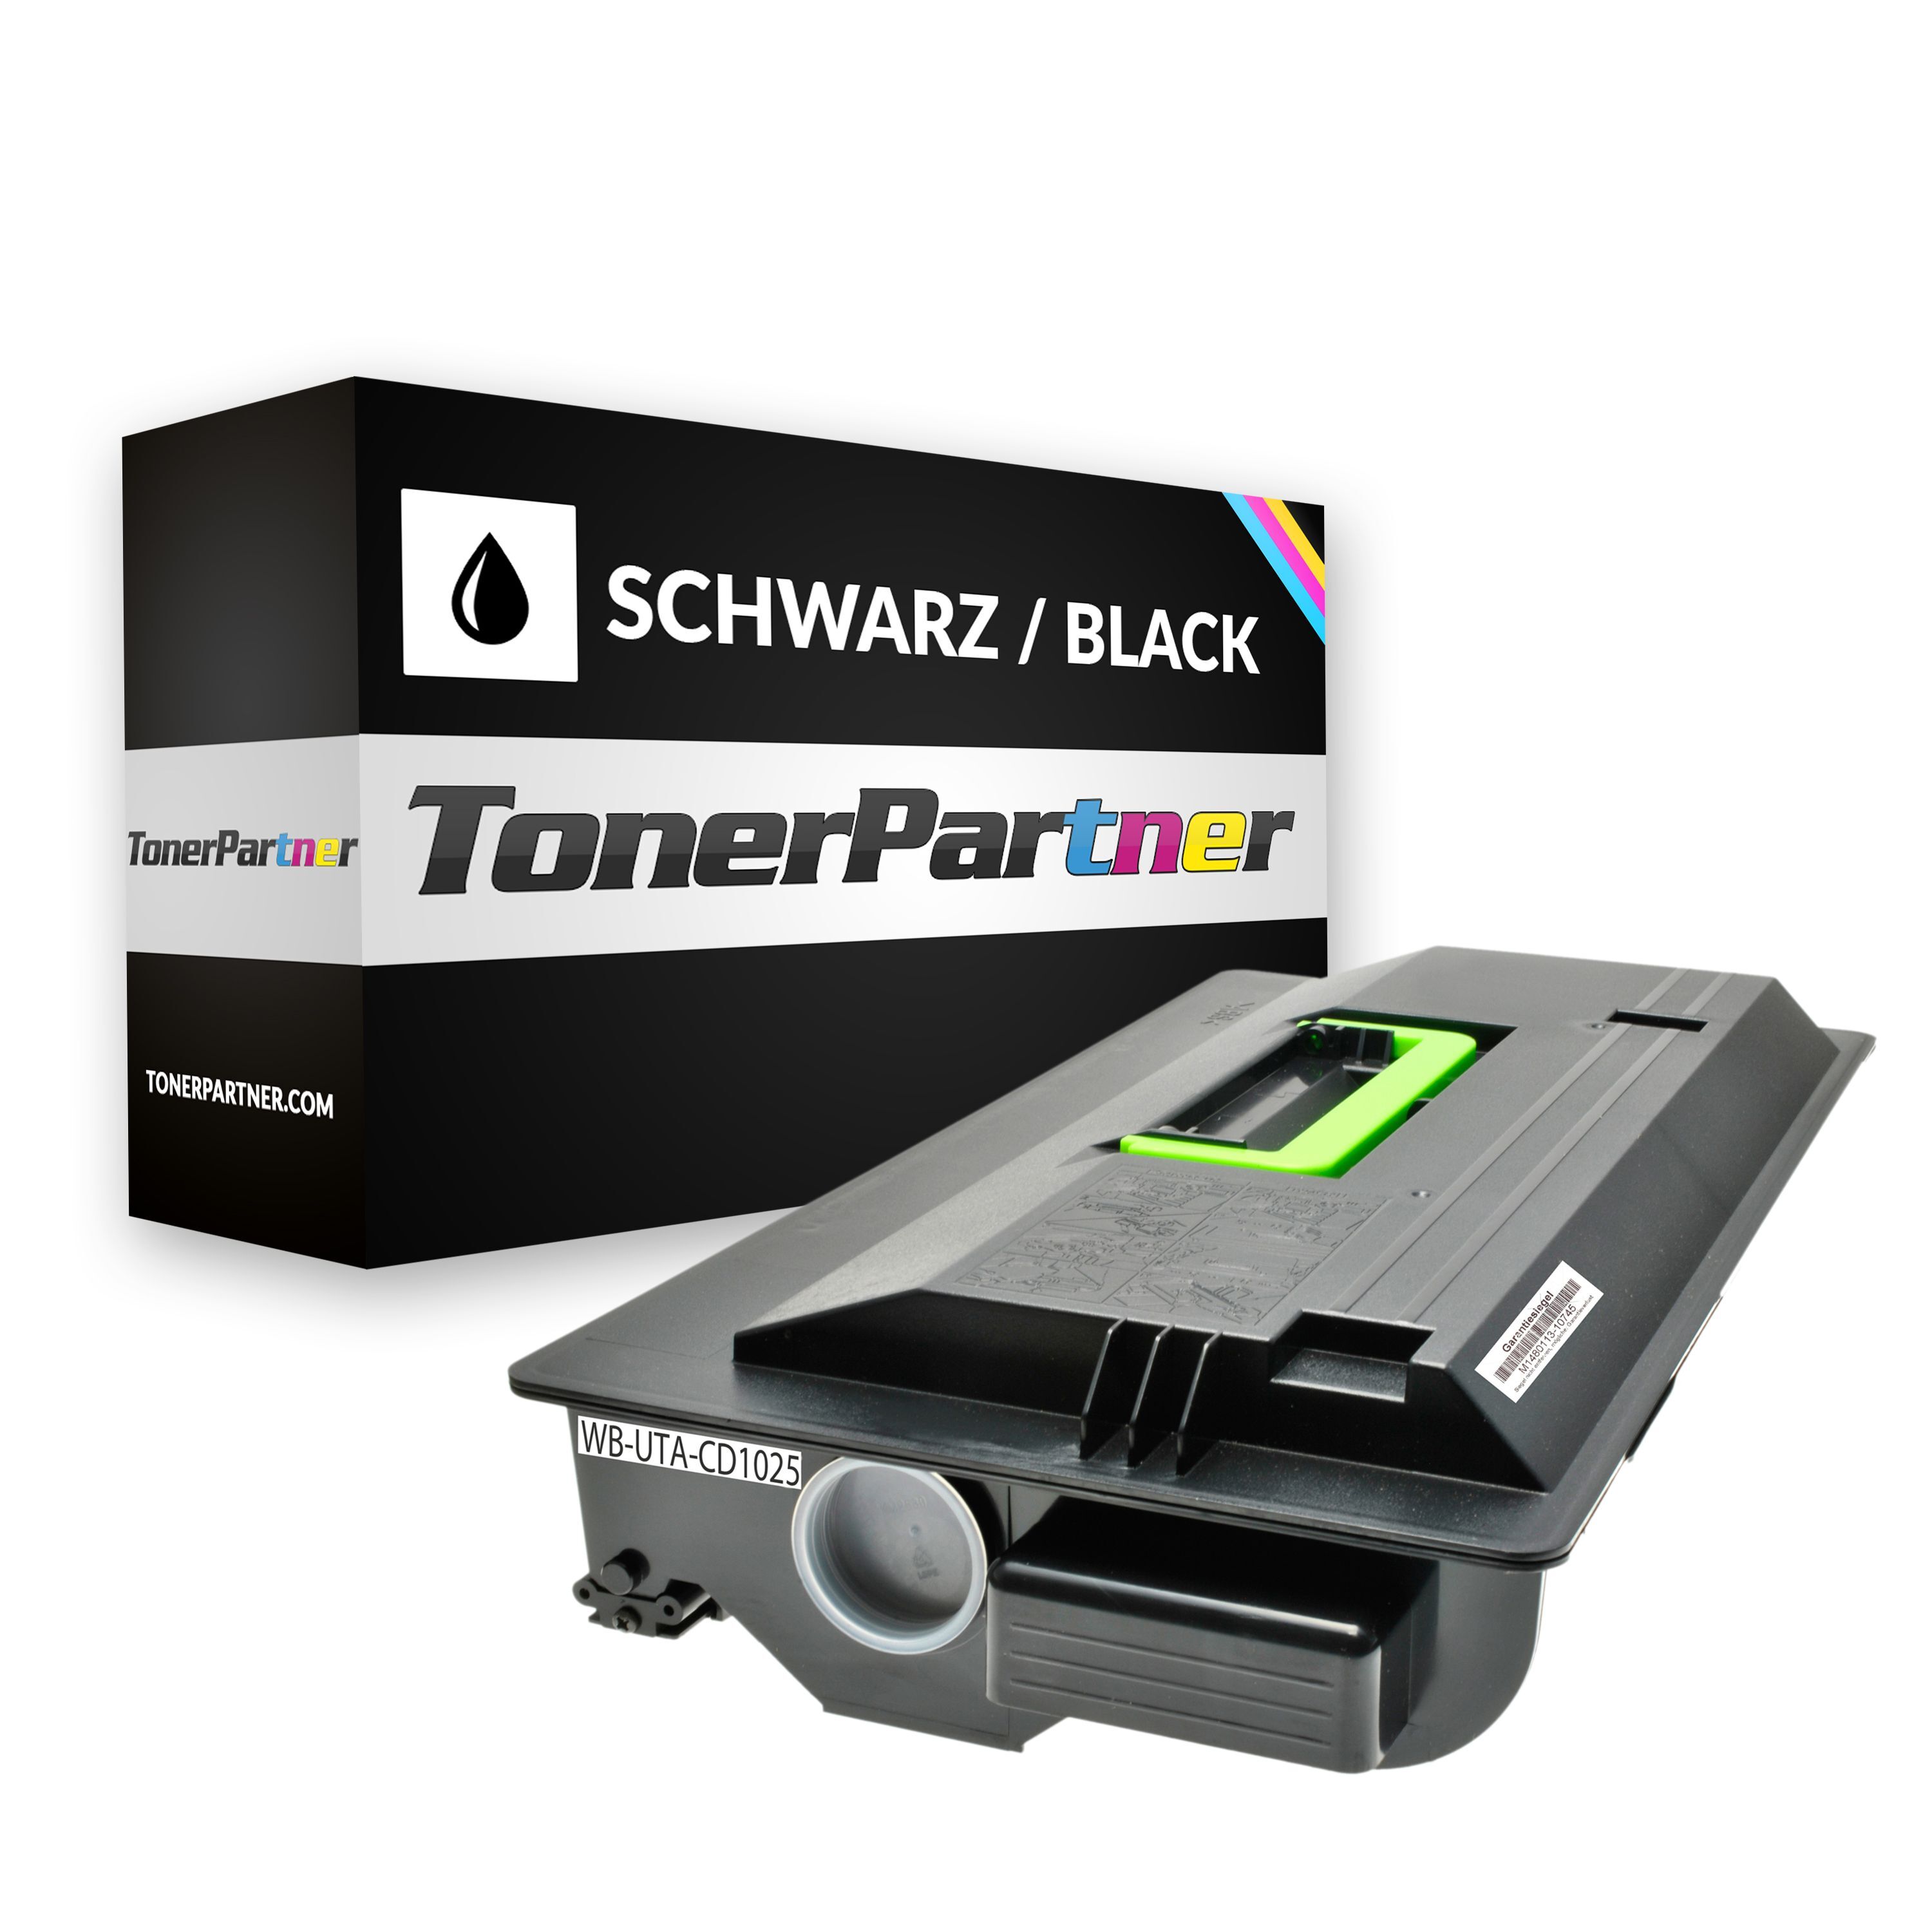 TonerPartner Kompatibel zu Utax CD 1030 Toner (6125 10010) schwarz, 34.000 Seiten, 0,29 Rp pro Seite, Inhalt: 1.080 g von TonerPartner